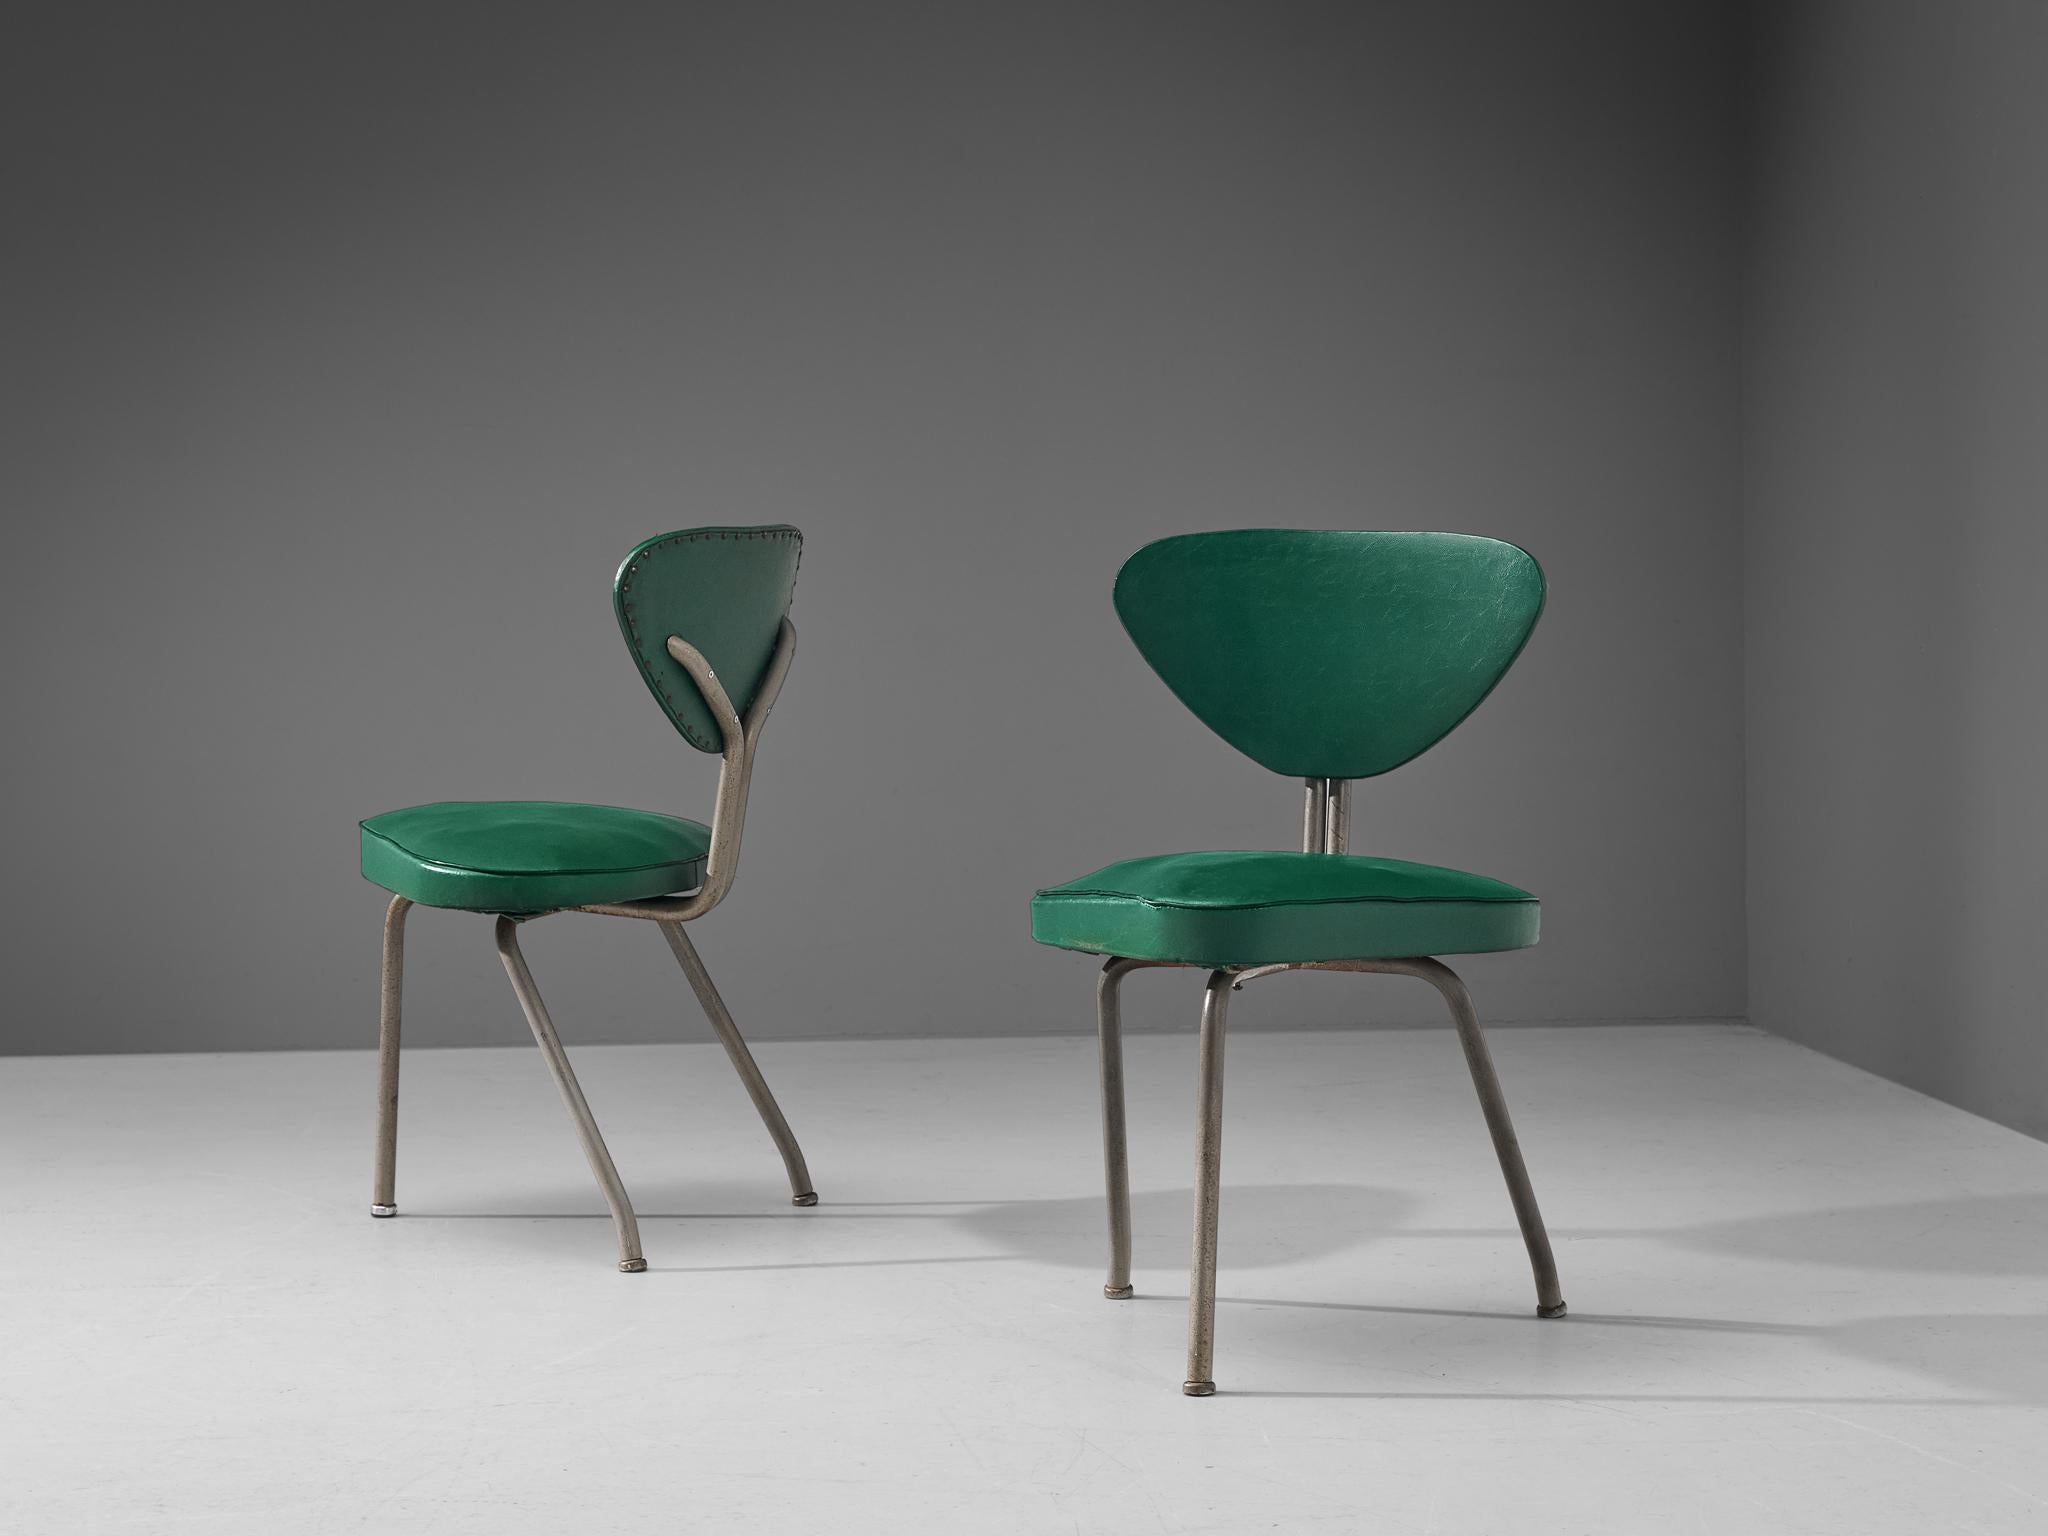 Paire de chaises tripodes, acier, similicuir vert, fer, Europe, années 1960. 

Paire de modestes chaises tripodes en similicuir vert. Ces chaises présentent une forme géométrique claire. Notez par exemple la forme triangulaire de l'assise et du